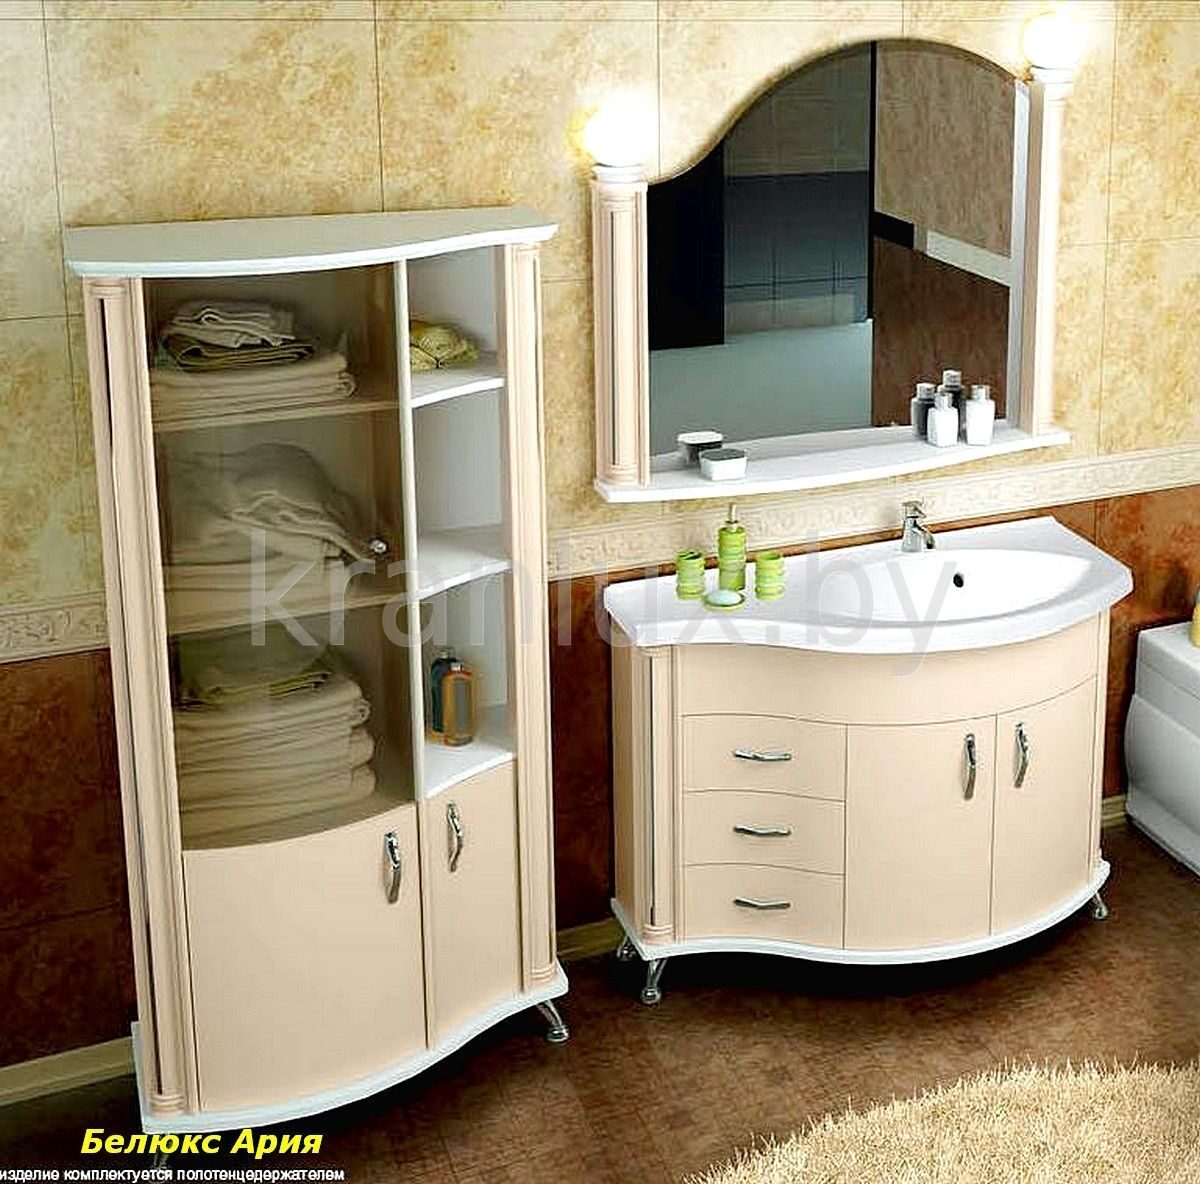 мебель для ванной комнаты из белоруссии